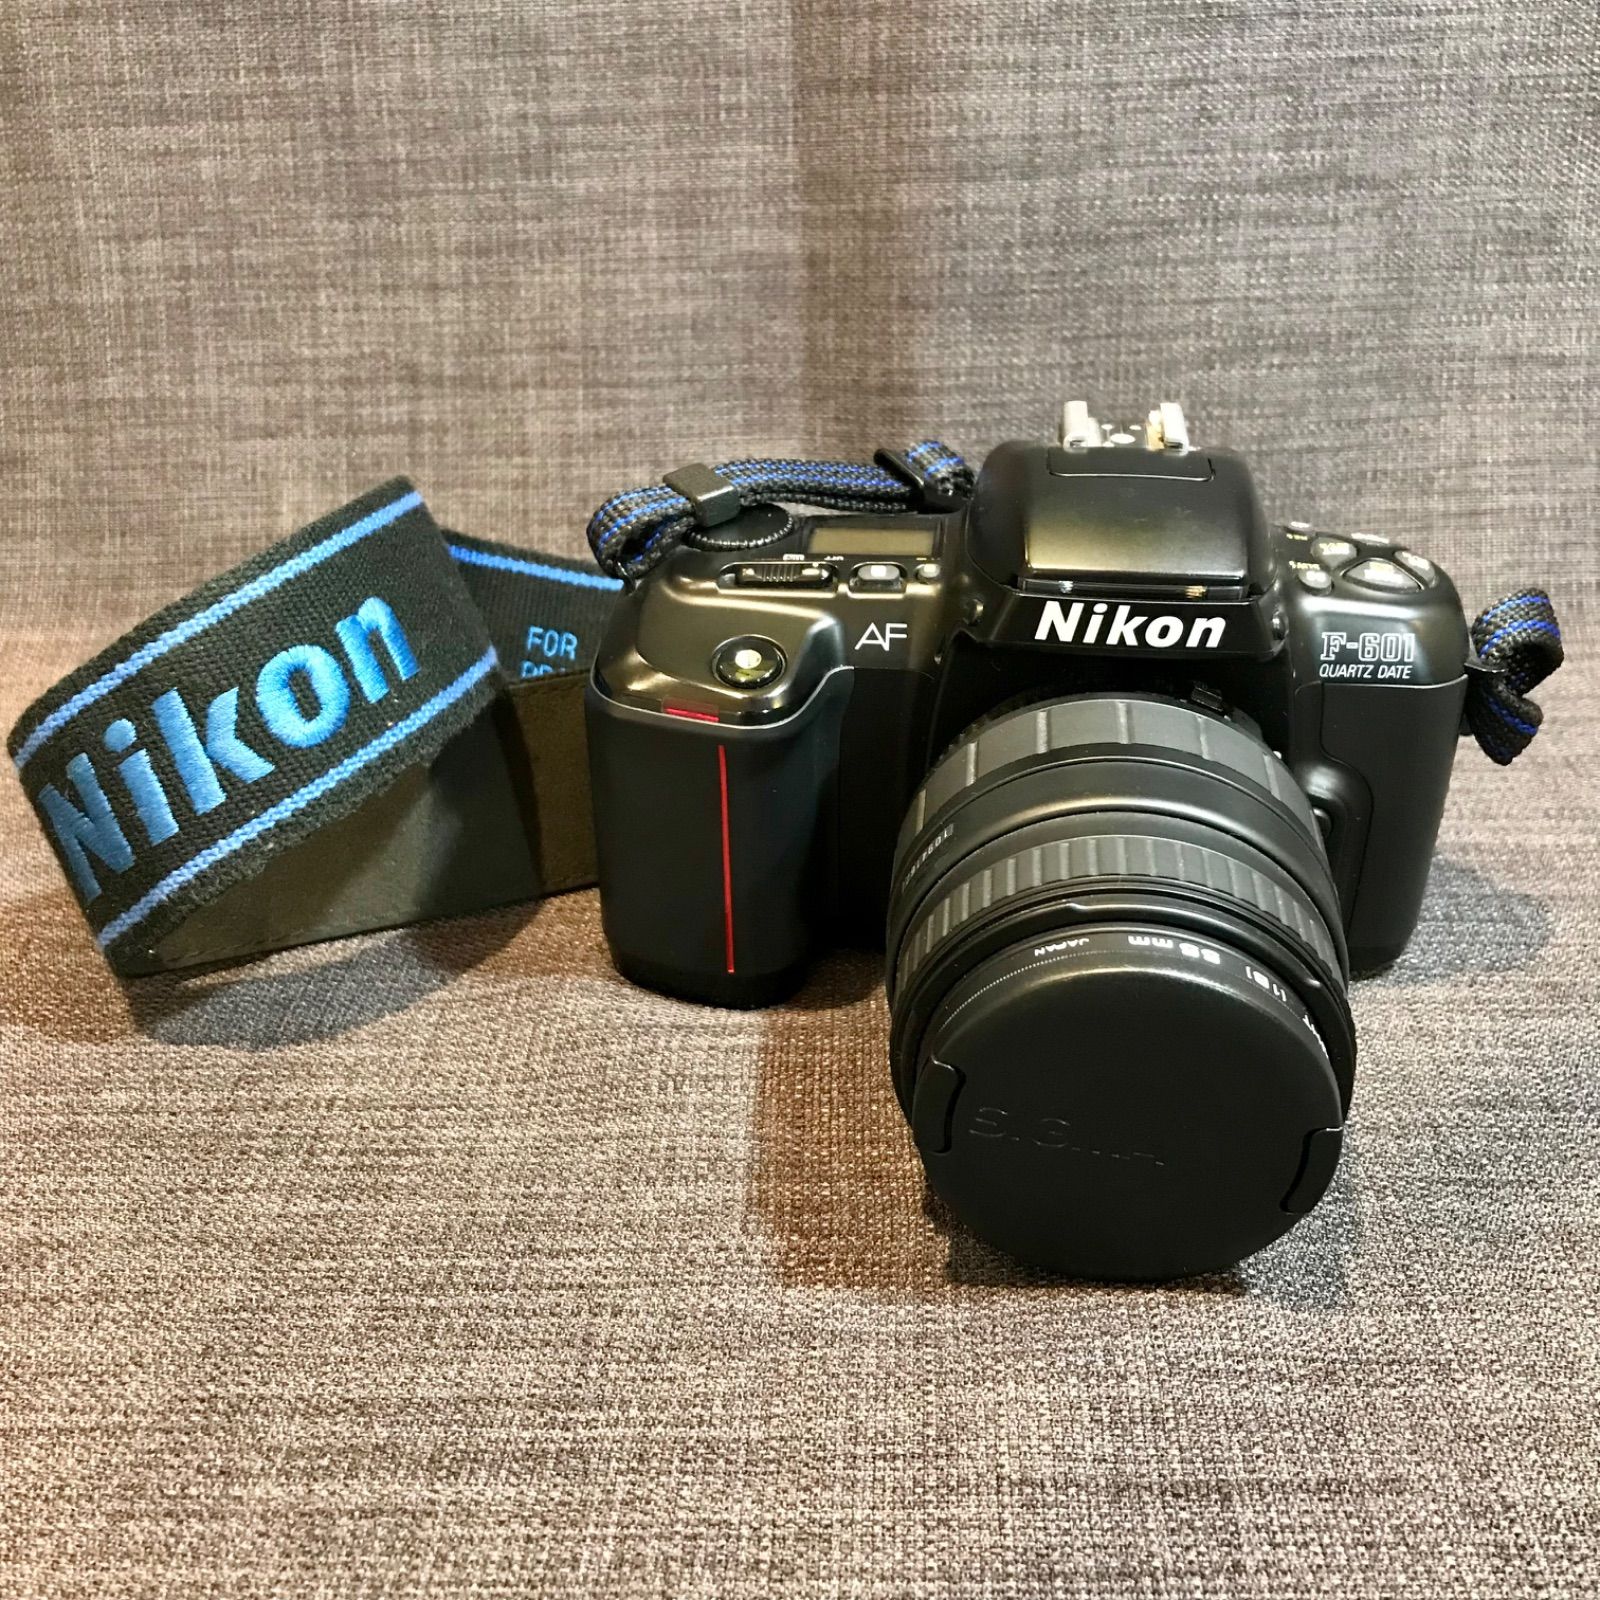 【値下げ】Nikon ジャンク品 フィルムカメラ F-601 U